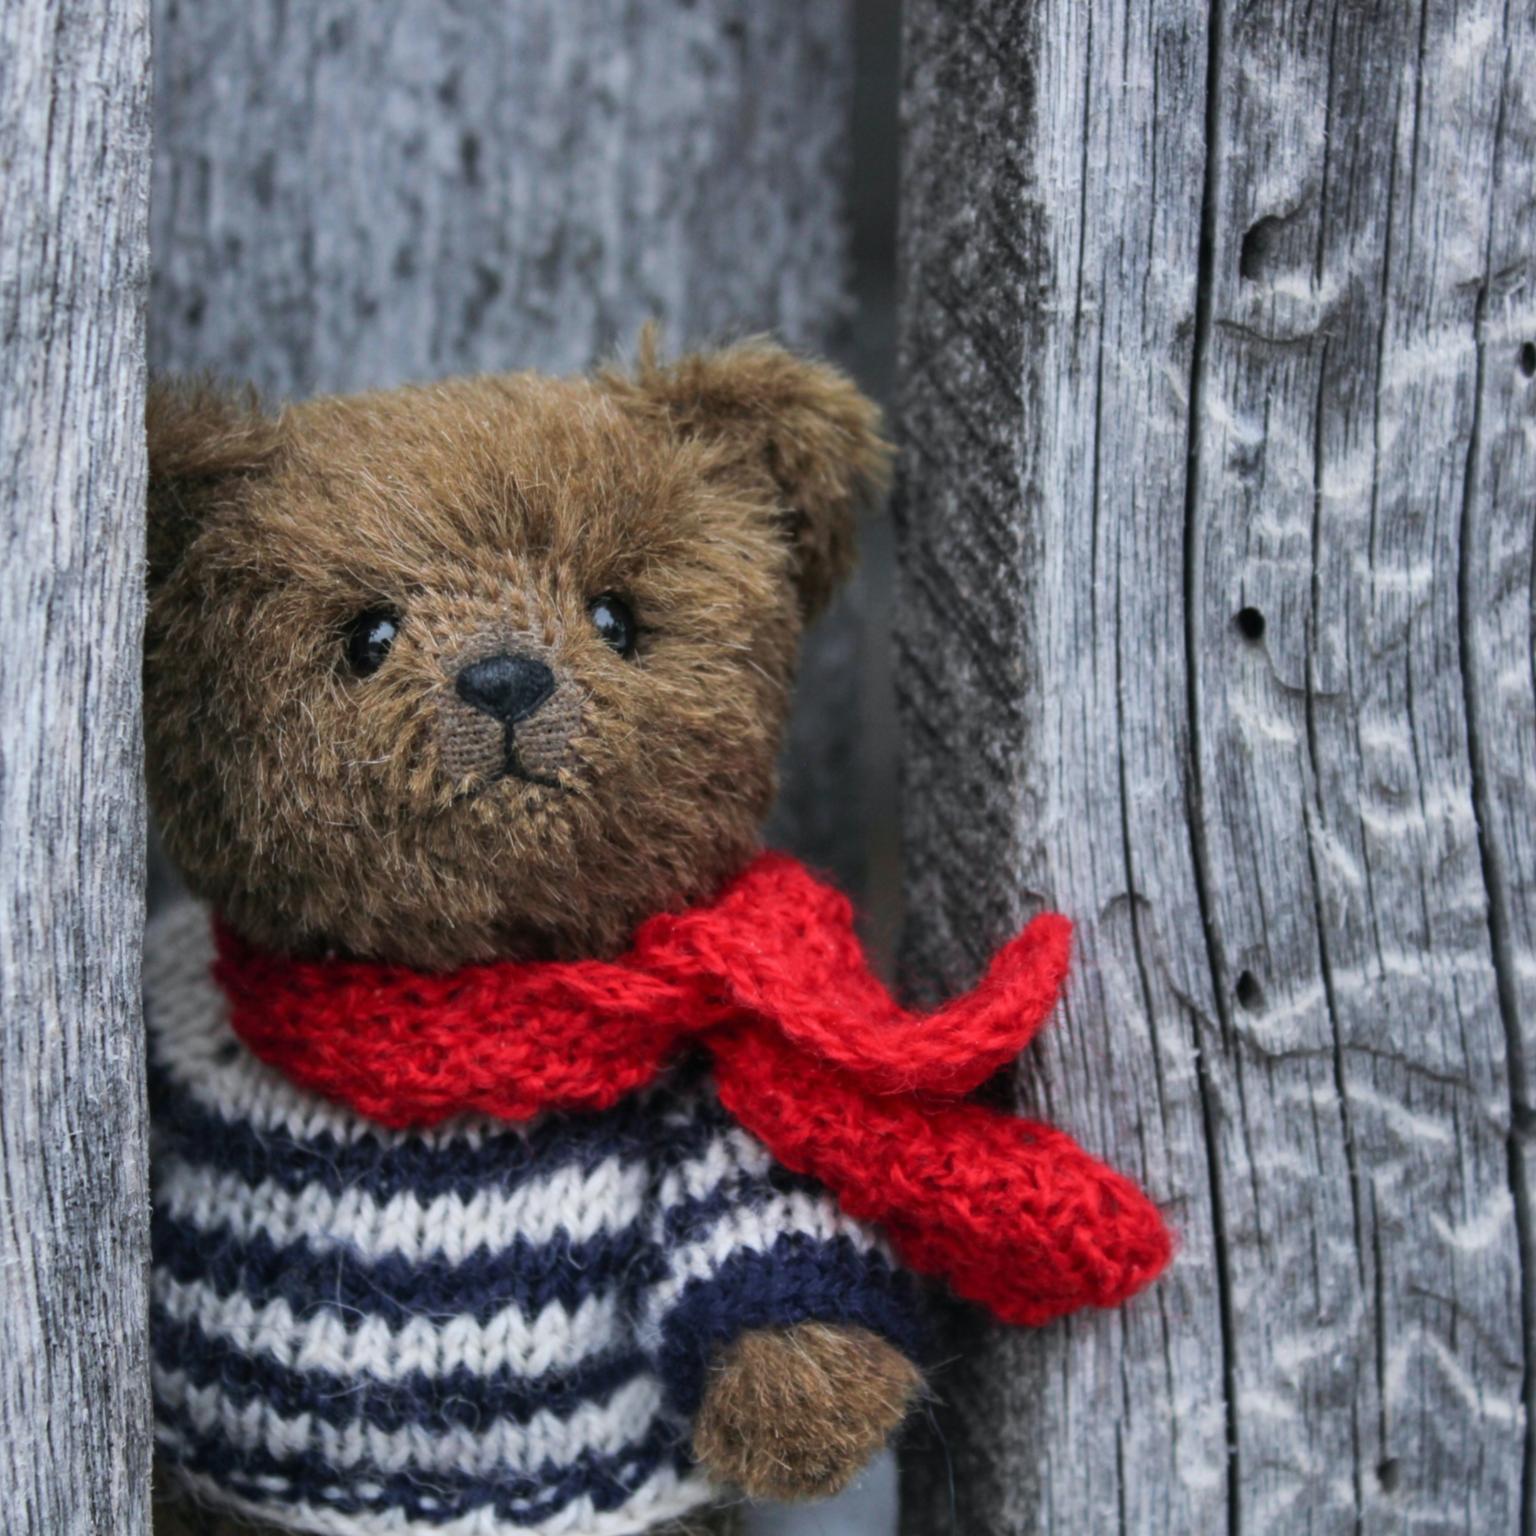 Teddy-Bär (c) Foto von Oxana Lyashenko auf Unsplash